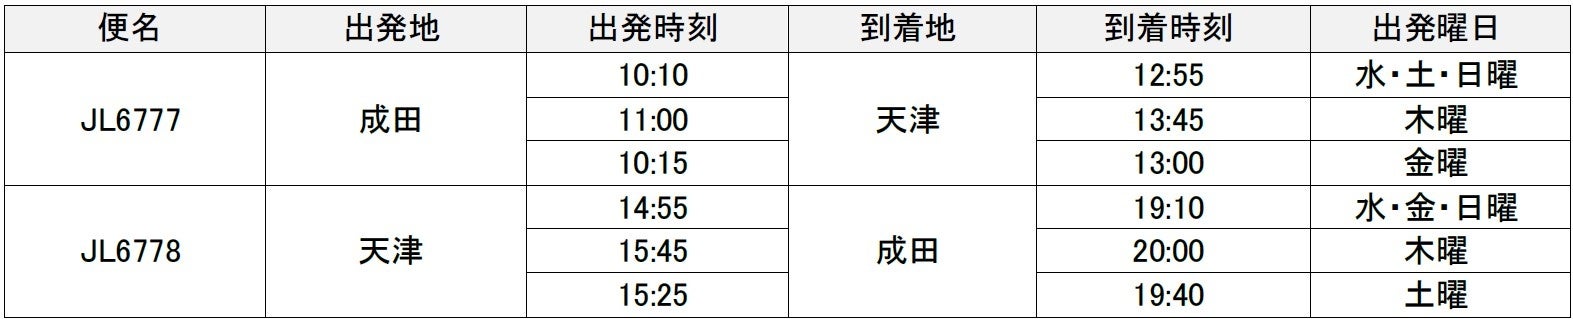 鎌倉の海を一望する１フロア貸切ラグジュアリーバケーションレンタル「THE VIEW KAMAKURA」が4月12日(金)にプレオープン。